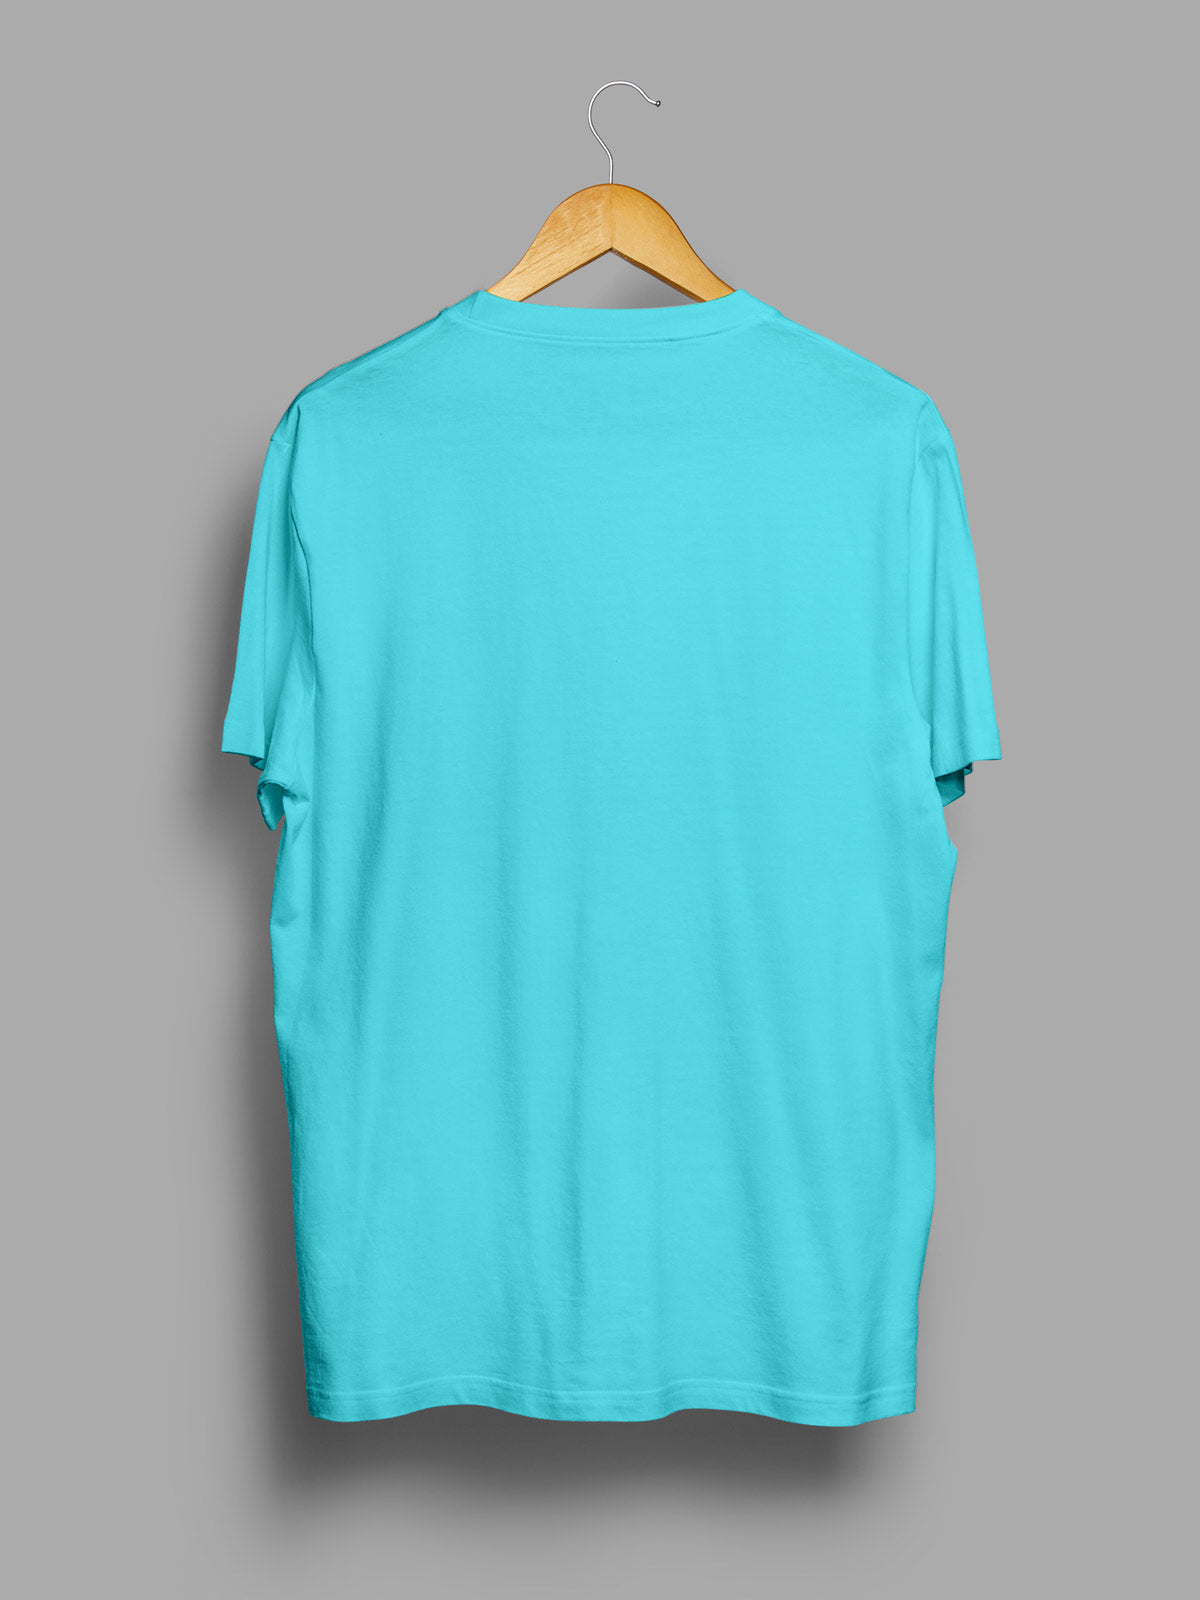 Celeste-blue-t-shirt-for-men by Ghumakkad